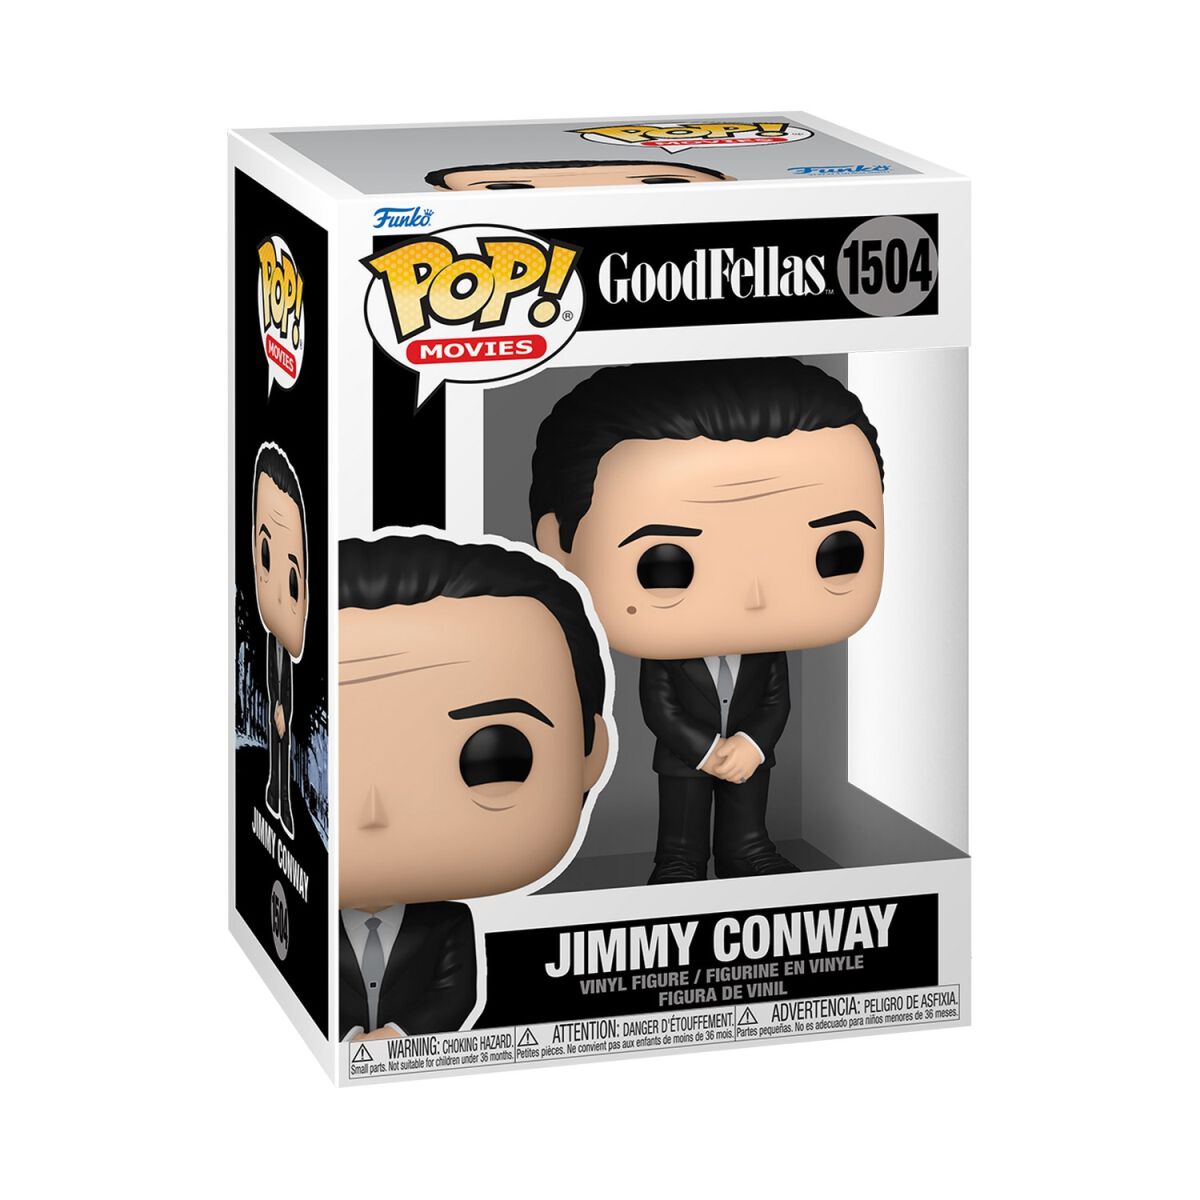 Goodfellas Jimmy Conway Vinyl Figur 1504 Funko Pop! multicolor